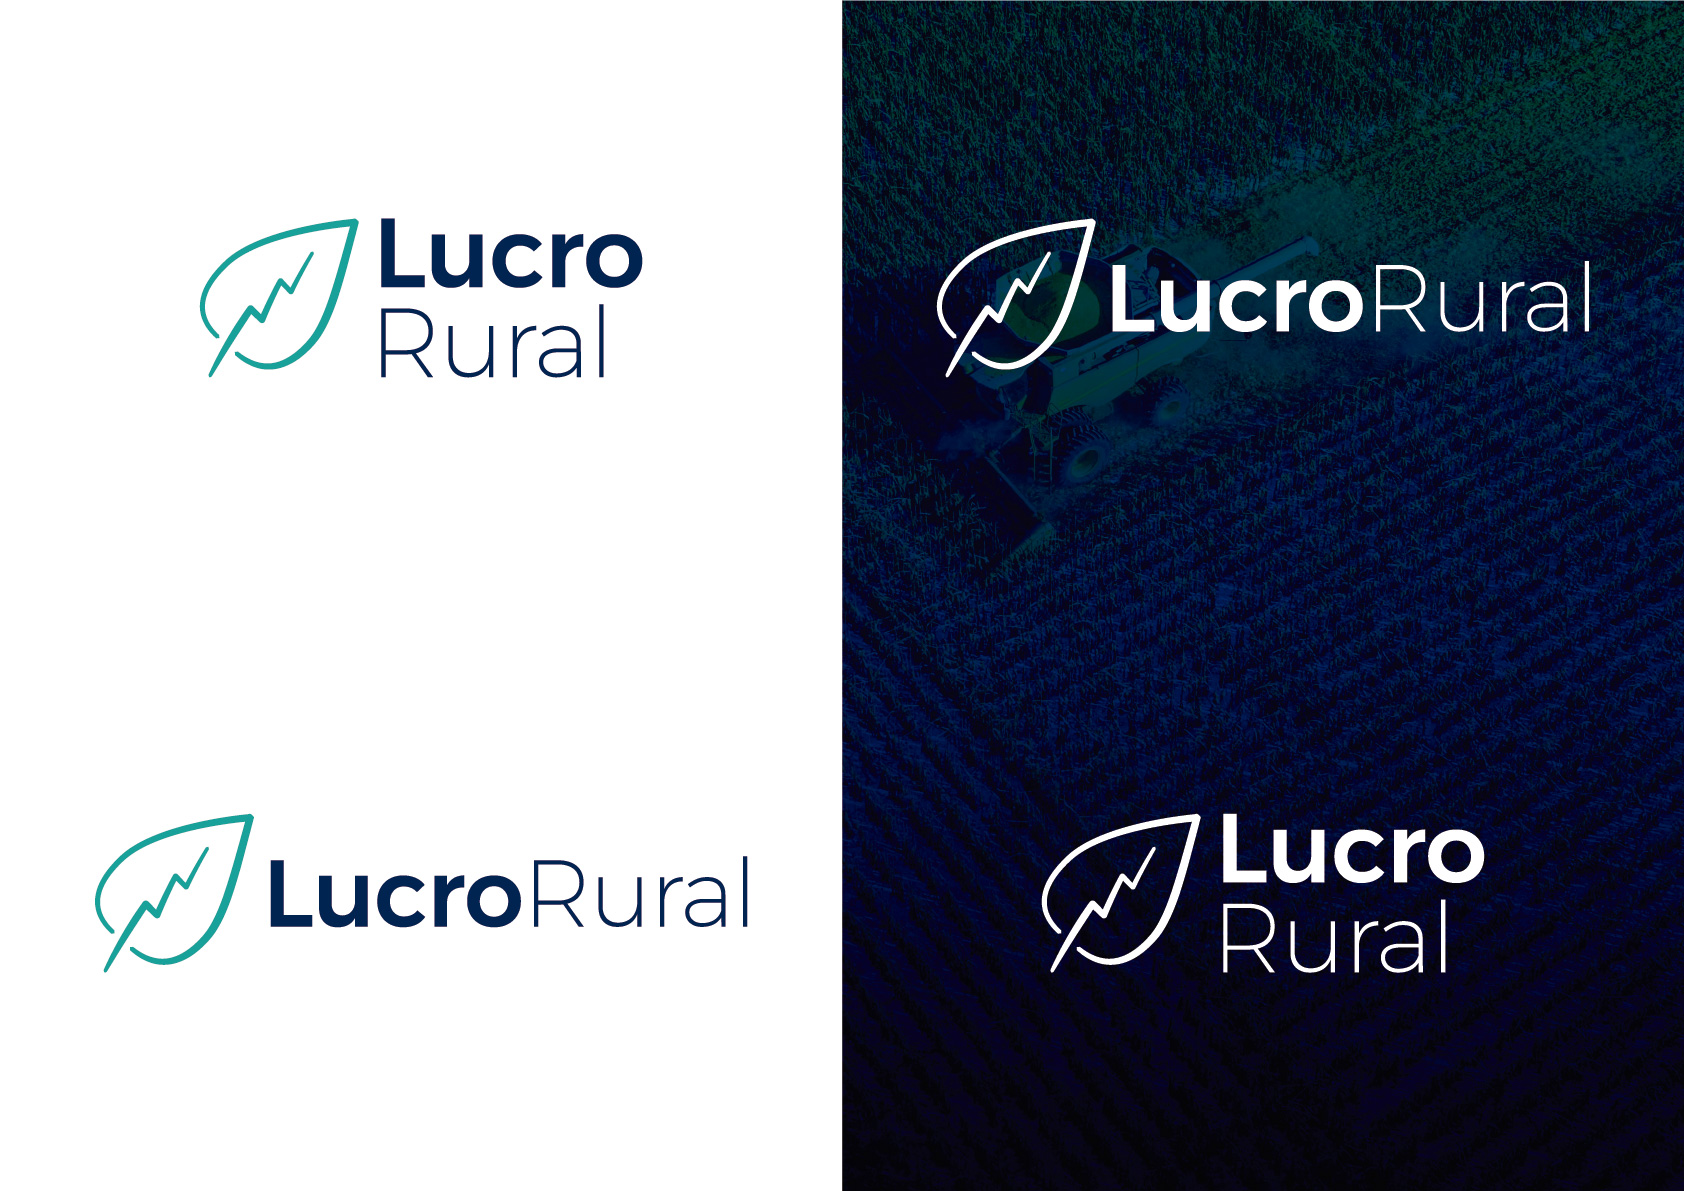 Criação do logo da Lucro Rural, por Cristiano Valim